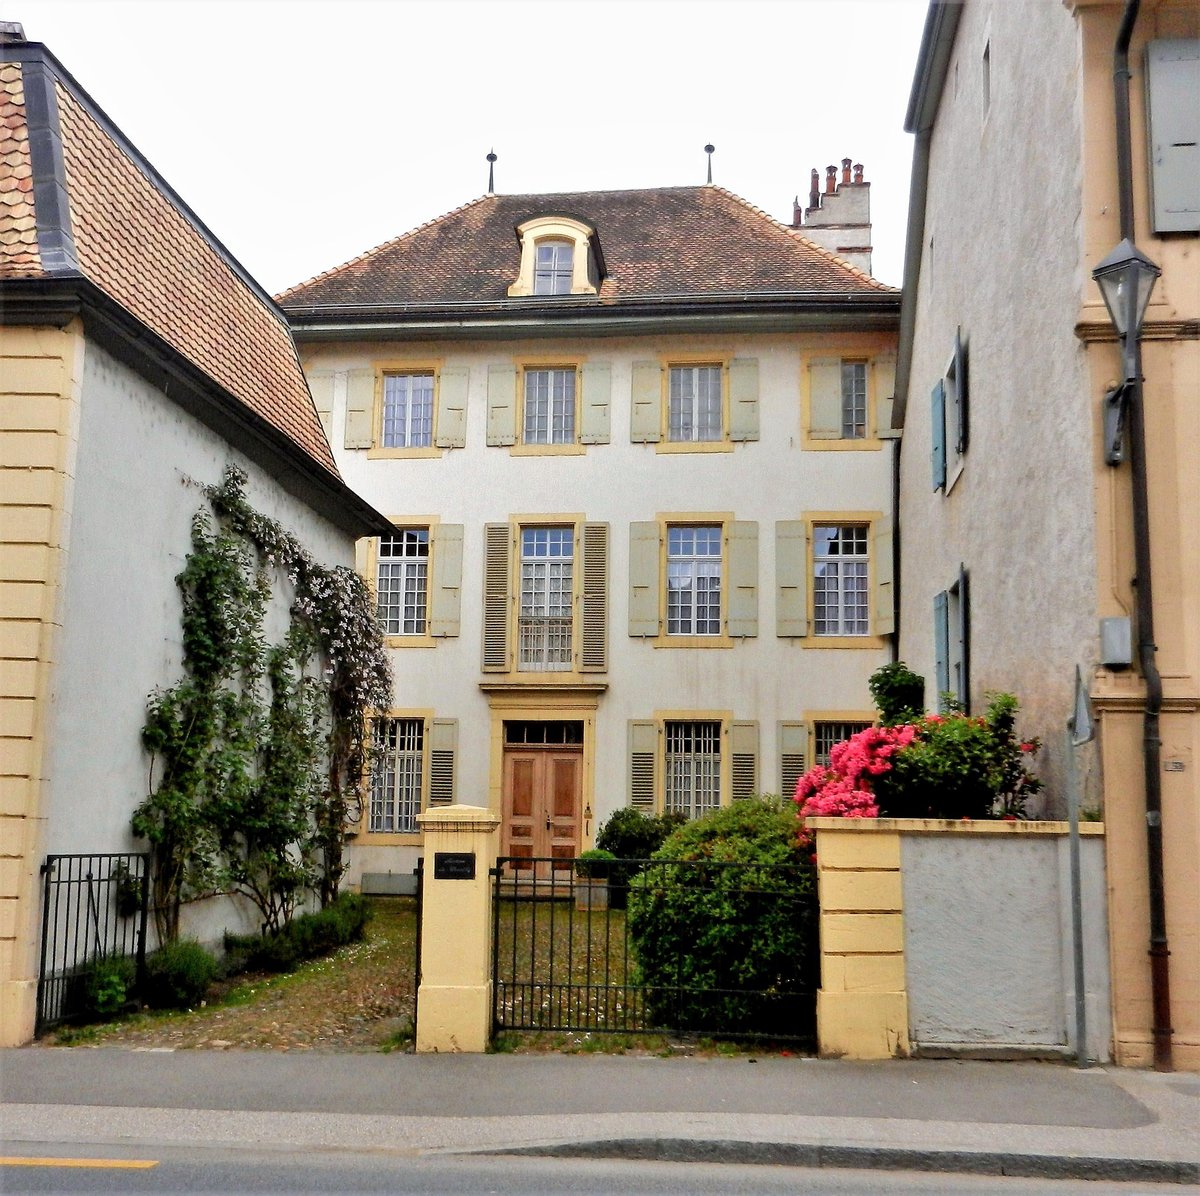 La Sarraz, Grand-Rue 19, Maison de Chevilly, Baujahr 1713-1714, unter Denkmalschutz seit 1991 - 09.05.2014